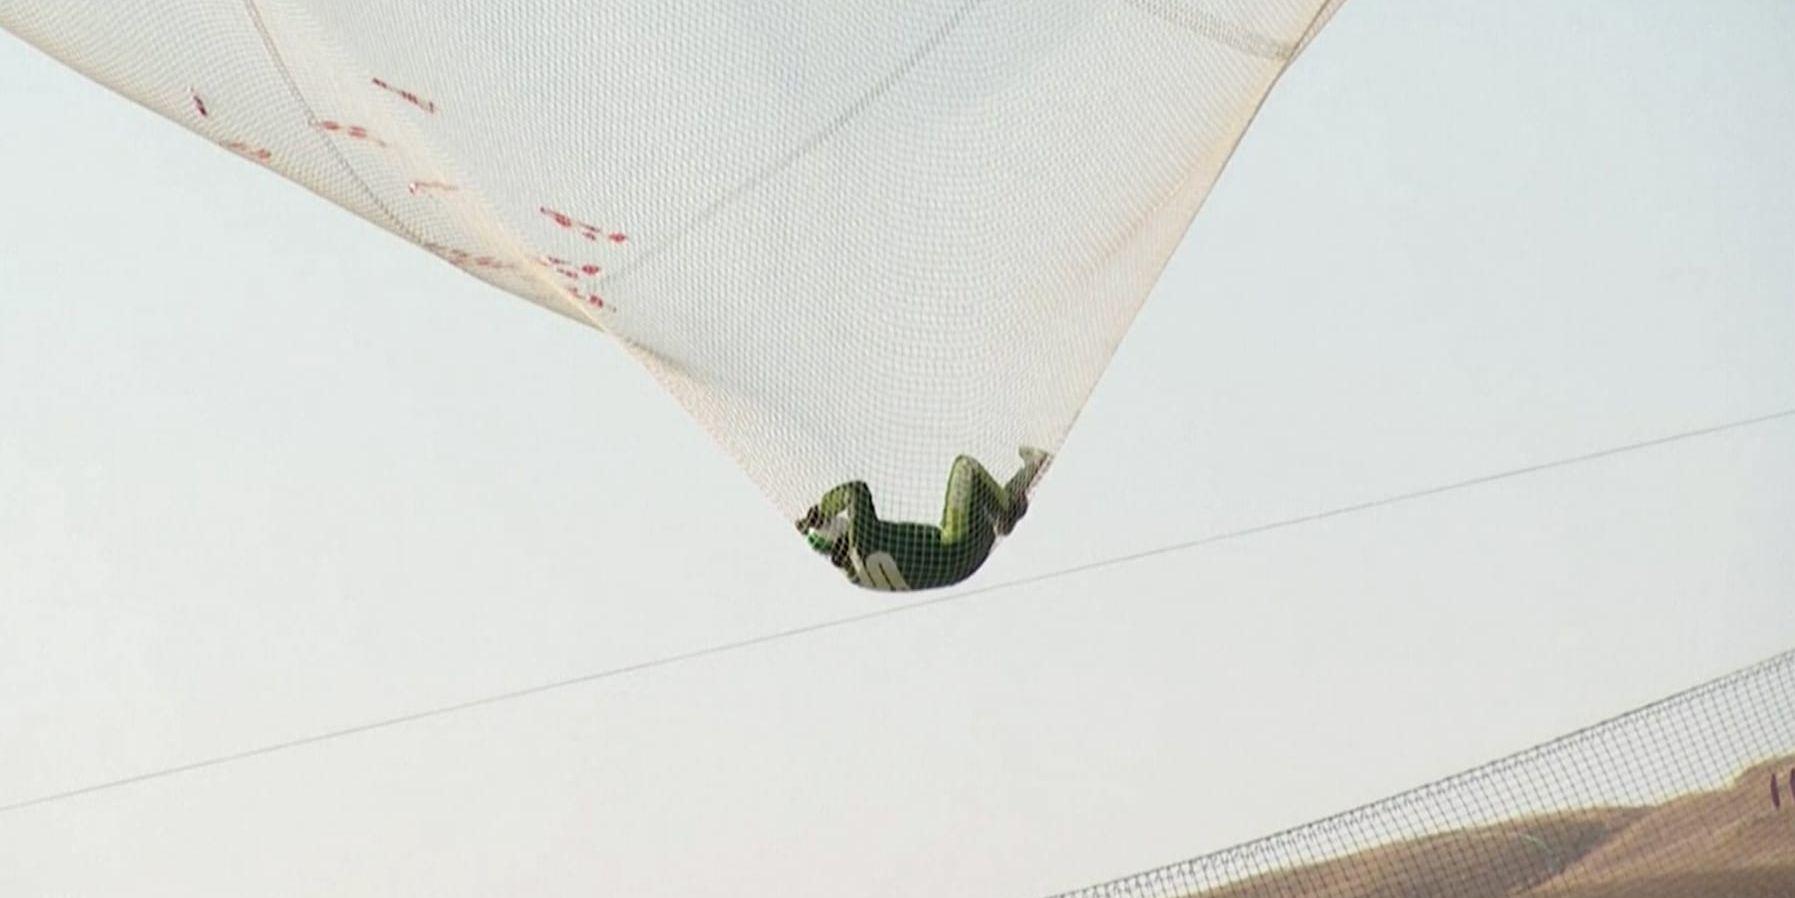 Den skärmlöse hopparen Luke Aikins fångas upp av ett nät i Simi Valley i Kalifornien efter sitt hopp från 7 600 meters höjd utan fallskärm.